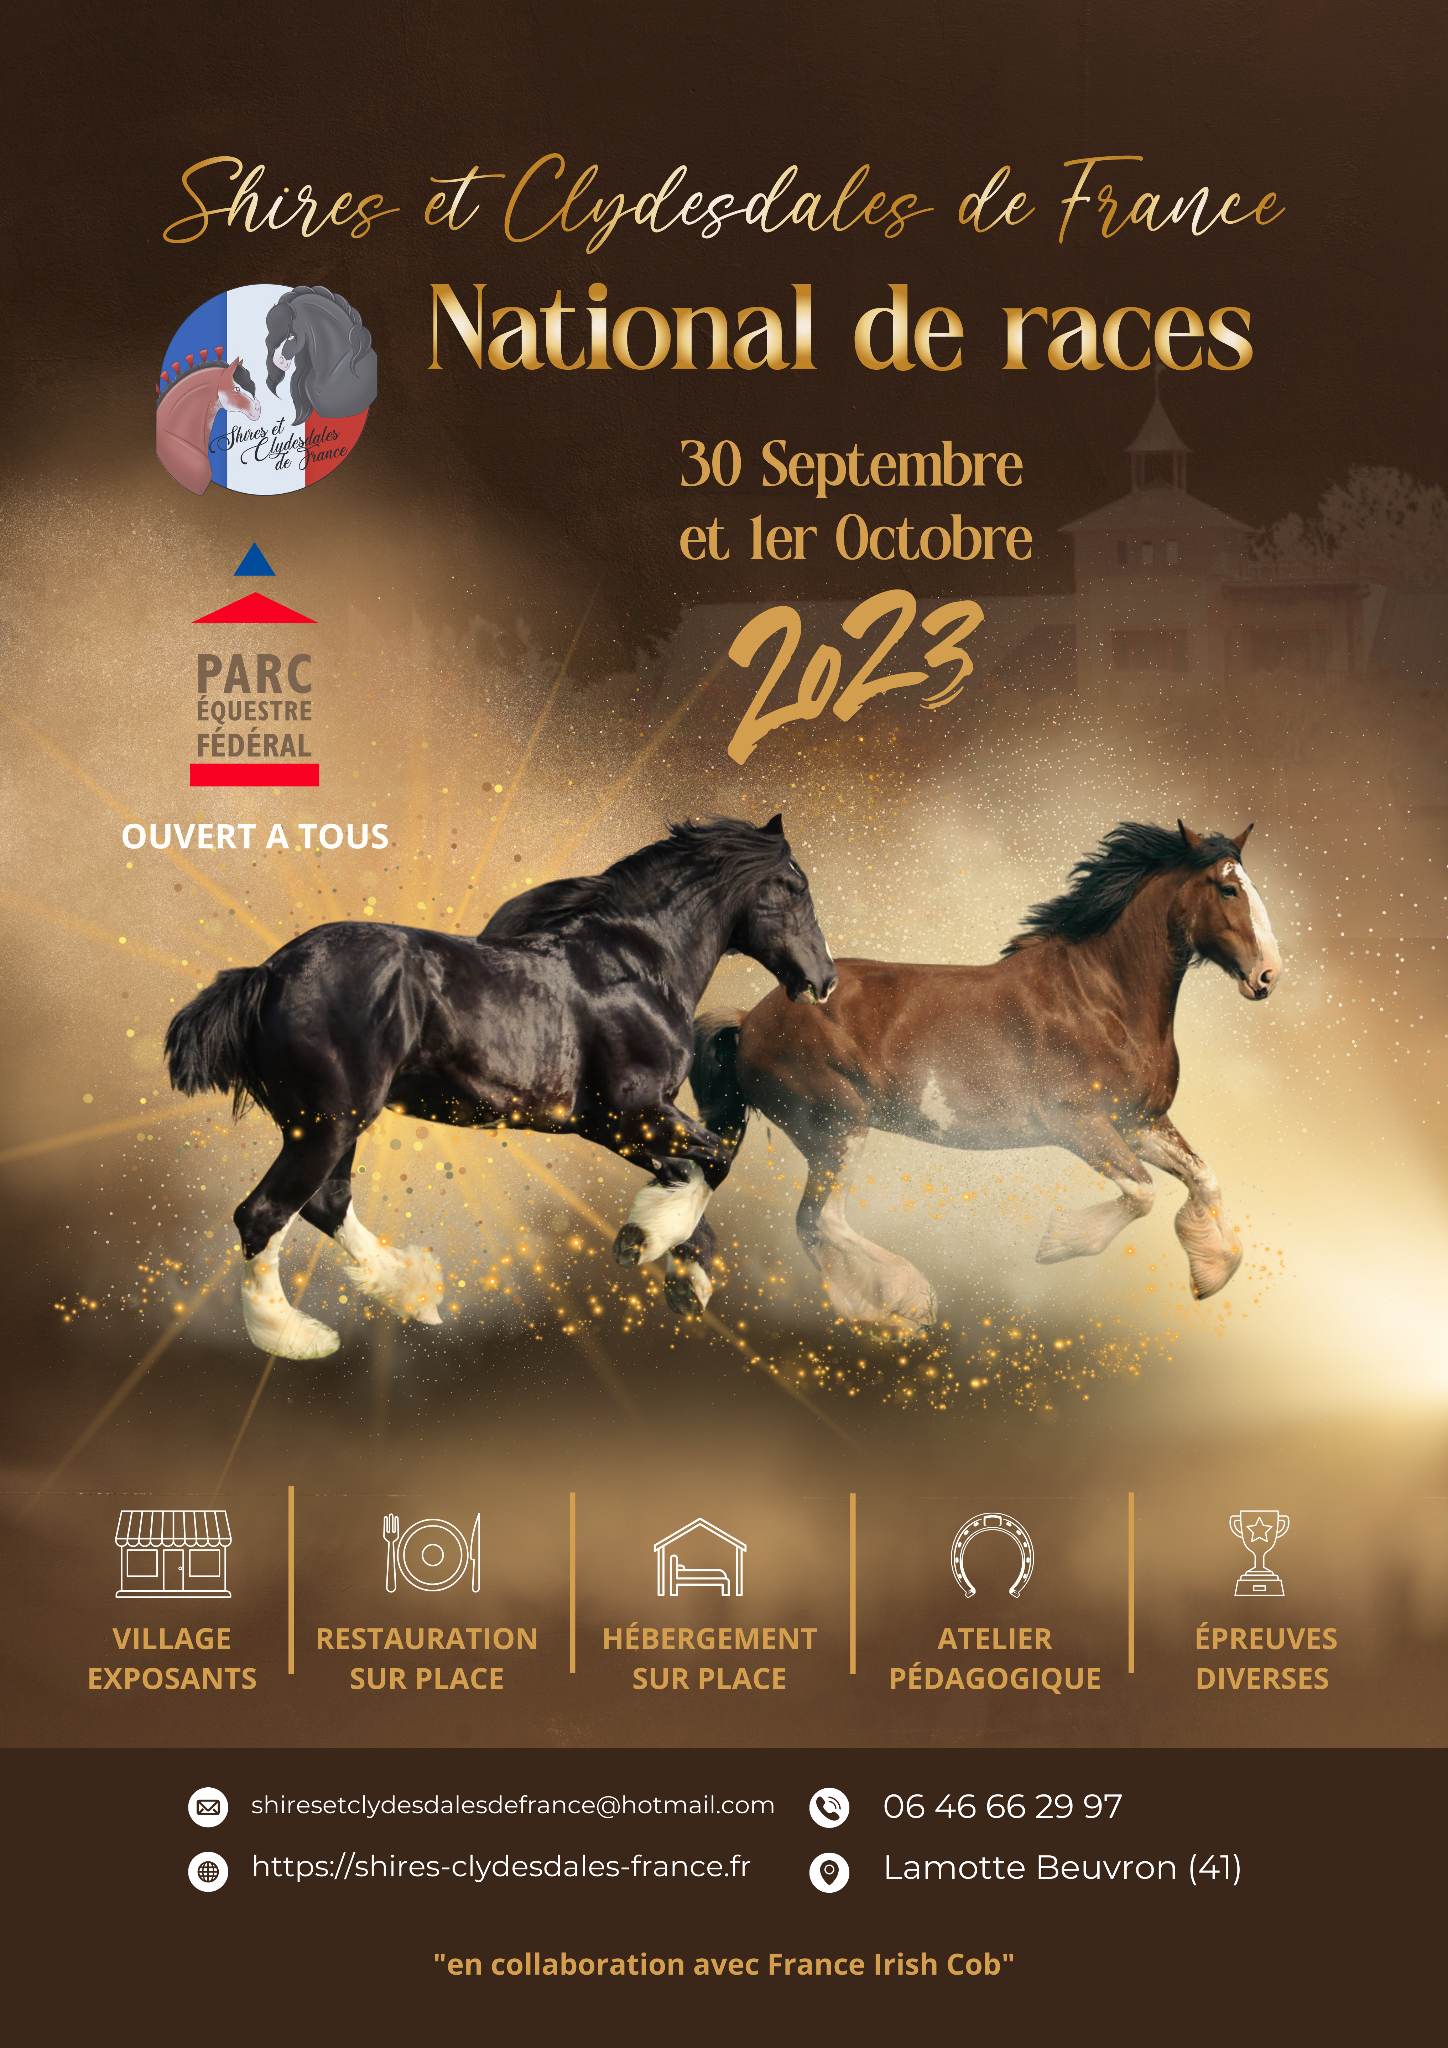 National de races Shires et Clydesdales de France